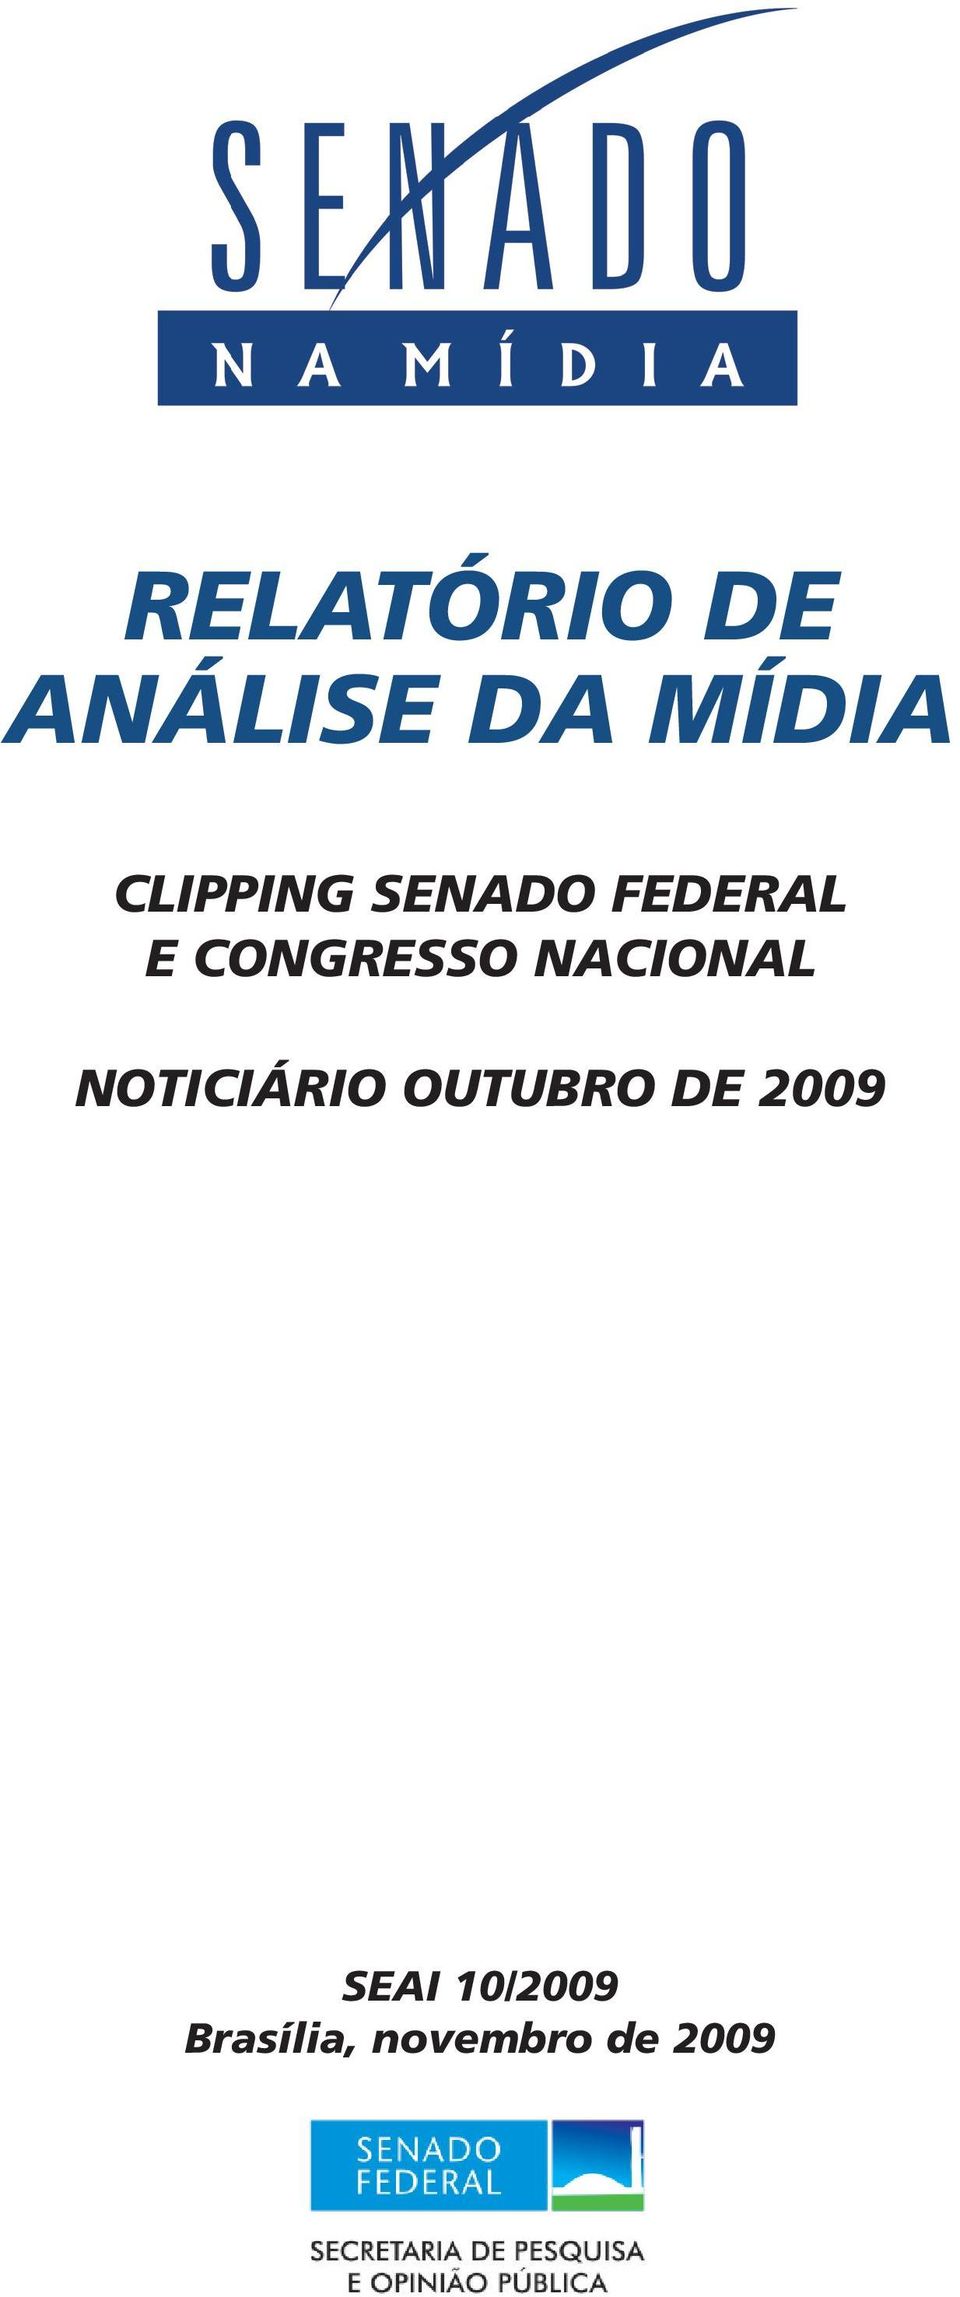 NACIONAL NOTICIÁRIO OUTUBRO DE 2009